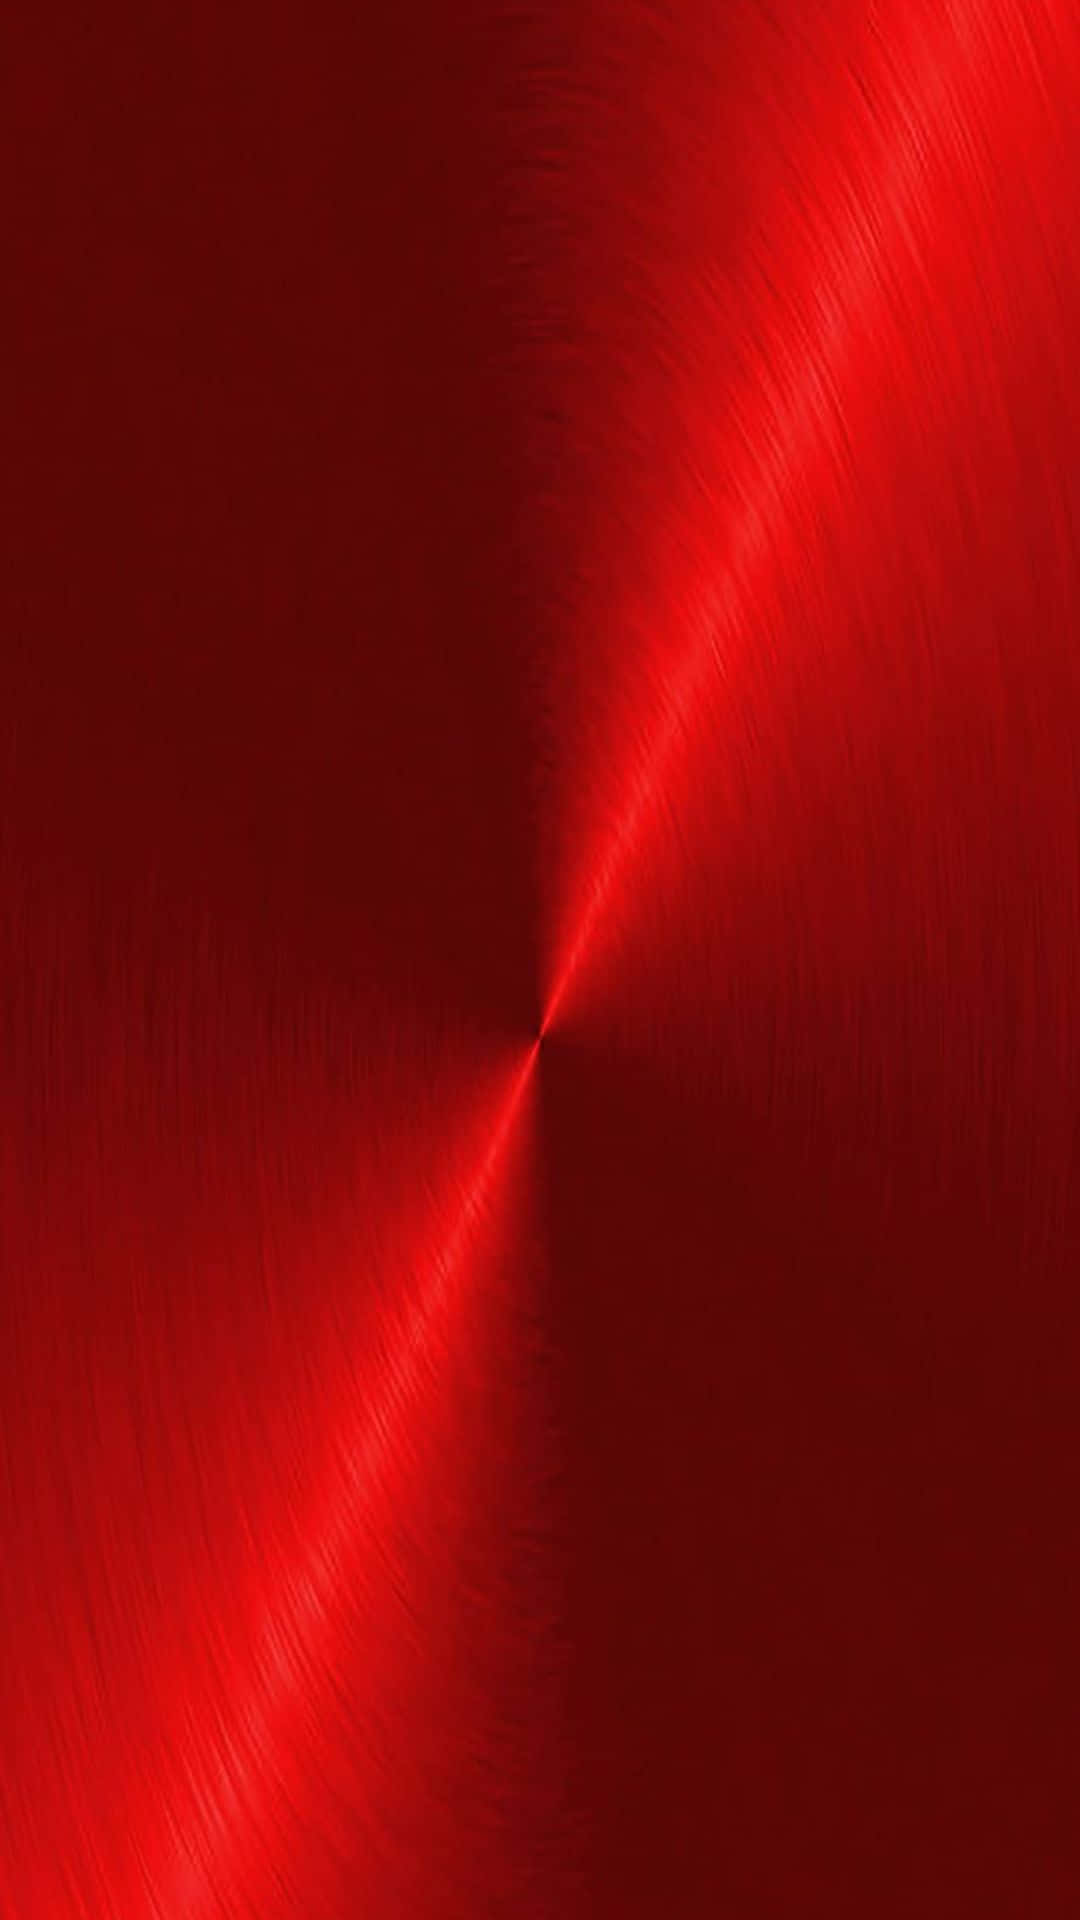 En lys, levende ensfarvet rød Wallpaper